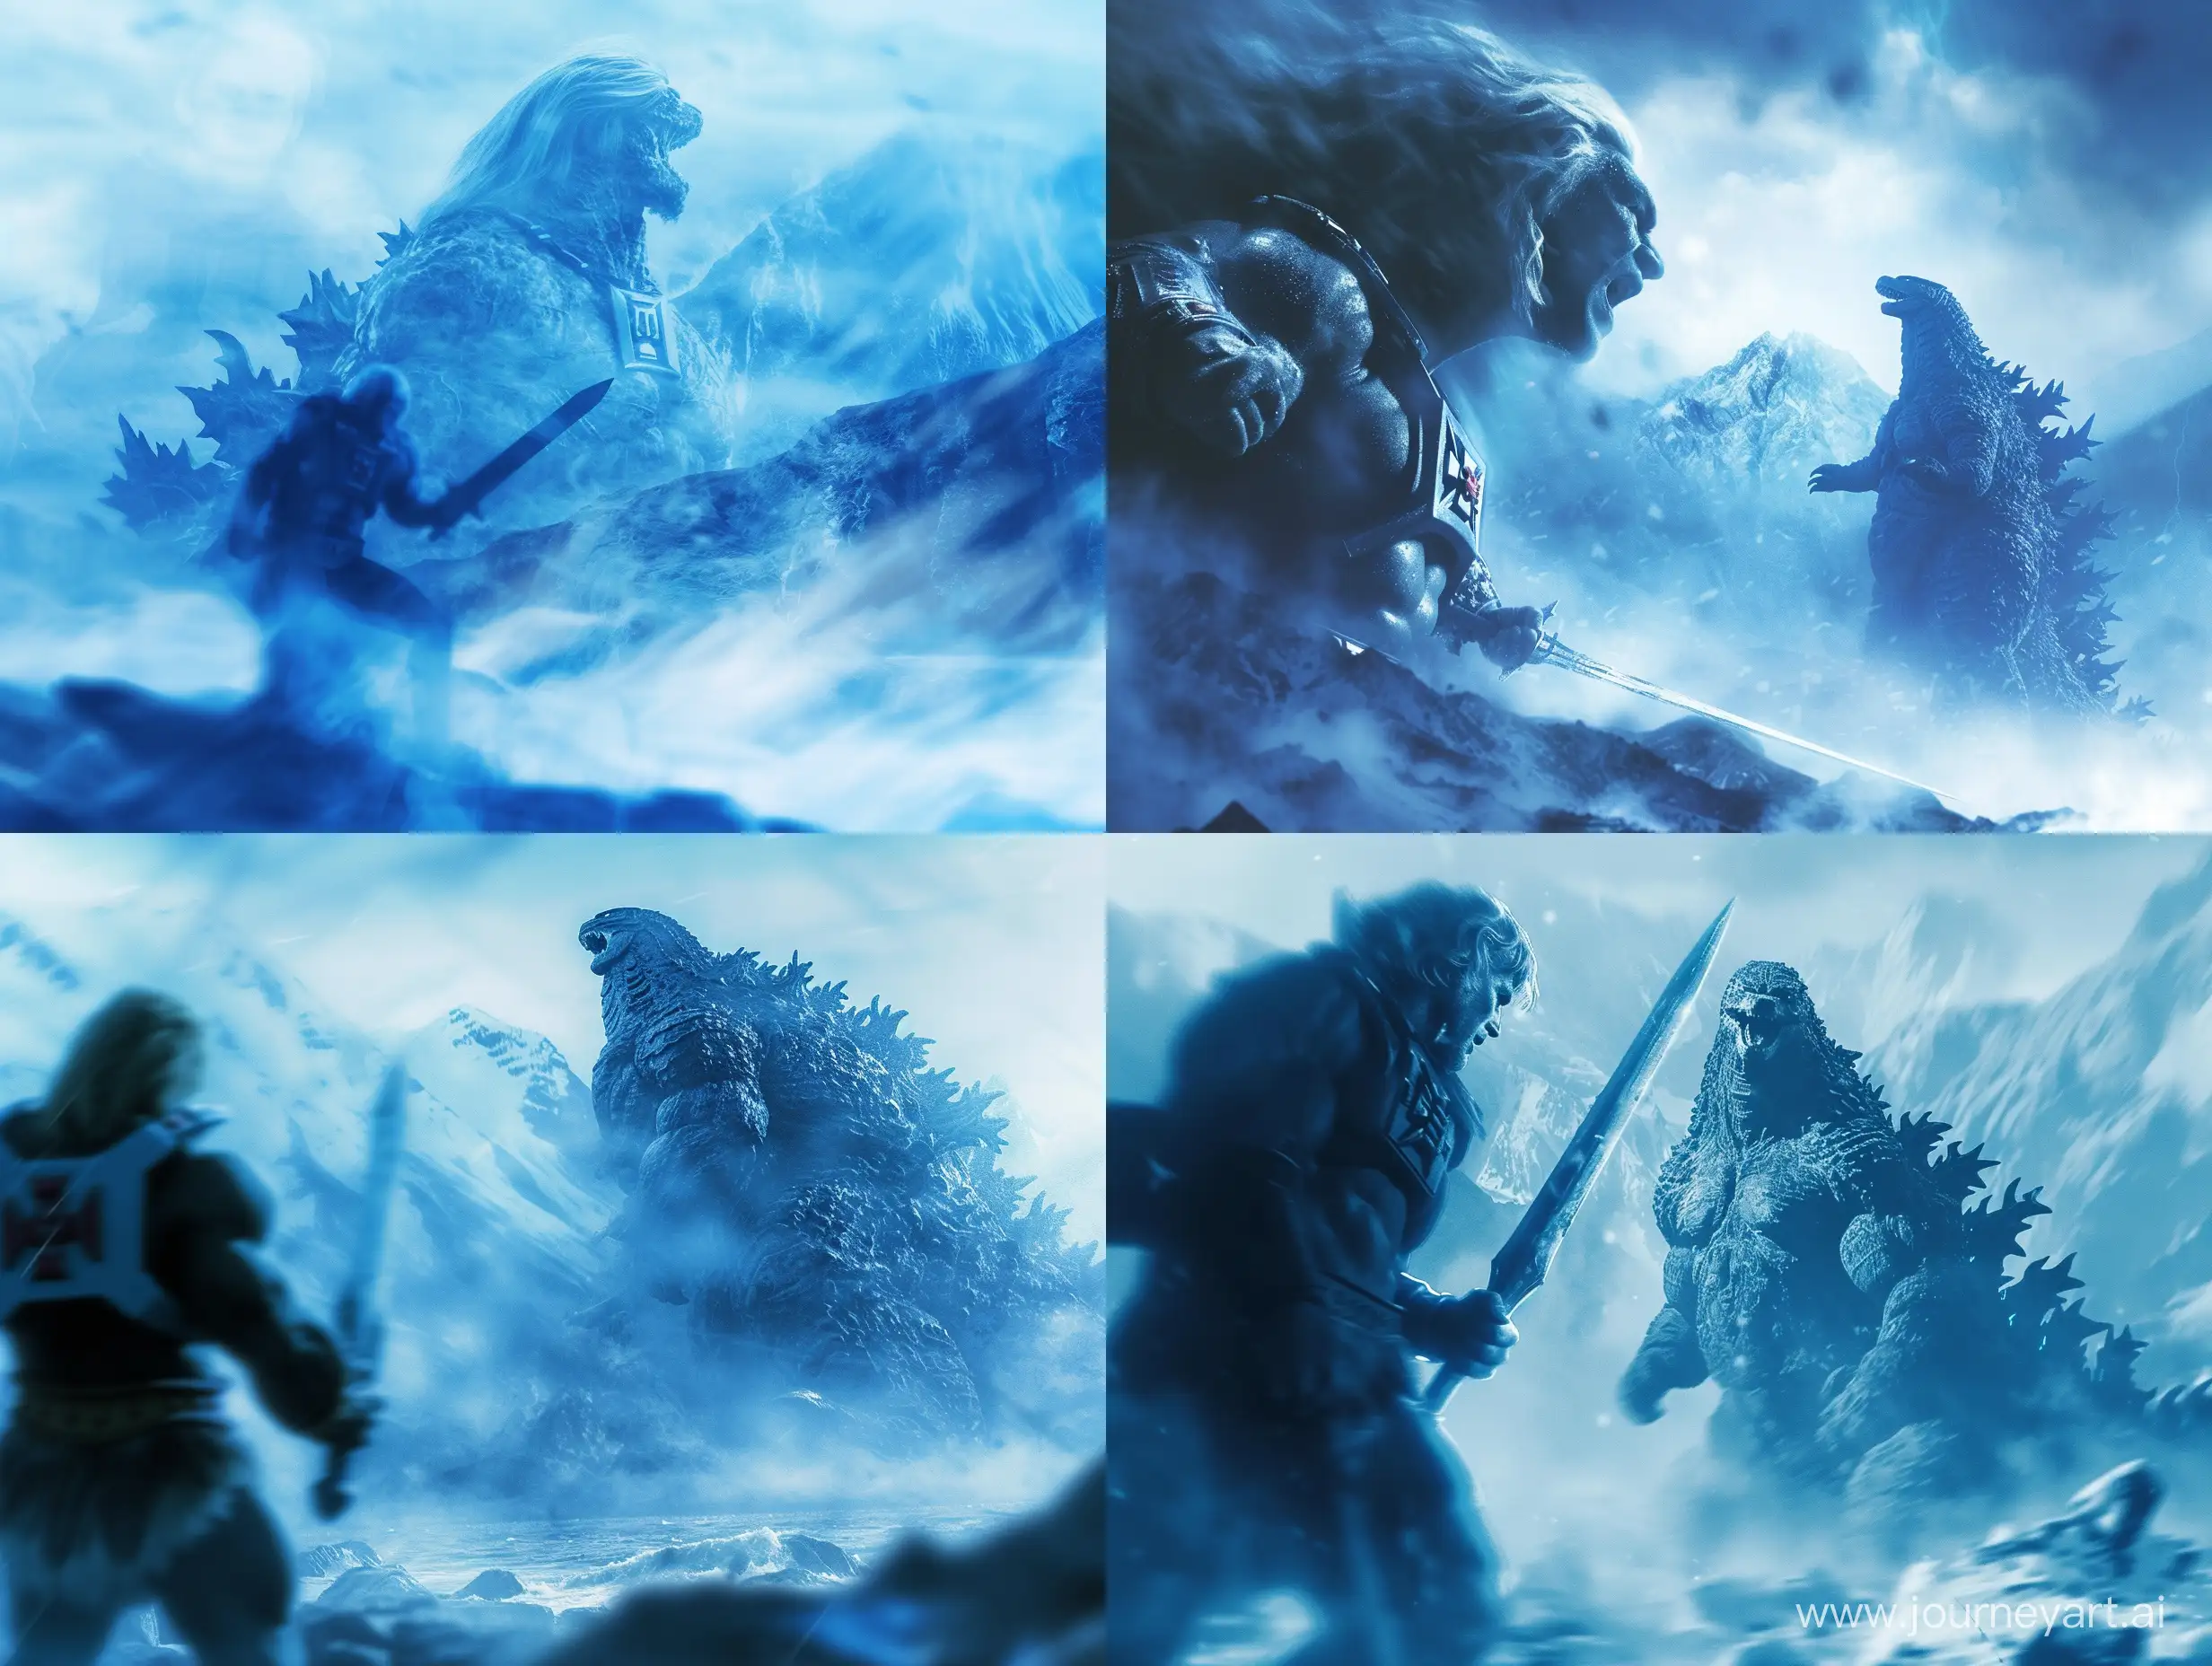 escena lejana de he-man con la cara de chuck norris  con pose agresiva sujetando una gran espada observando a lo lejos a godzilla del tamaño de una montaña en un escenario montañoso épico difuminado con tonalidades azules